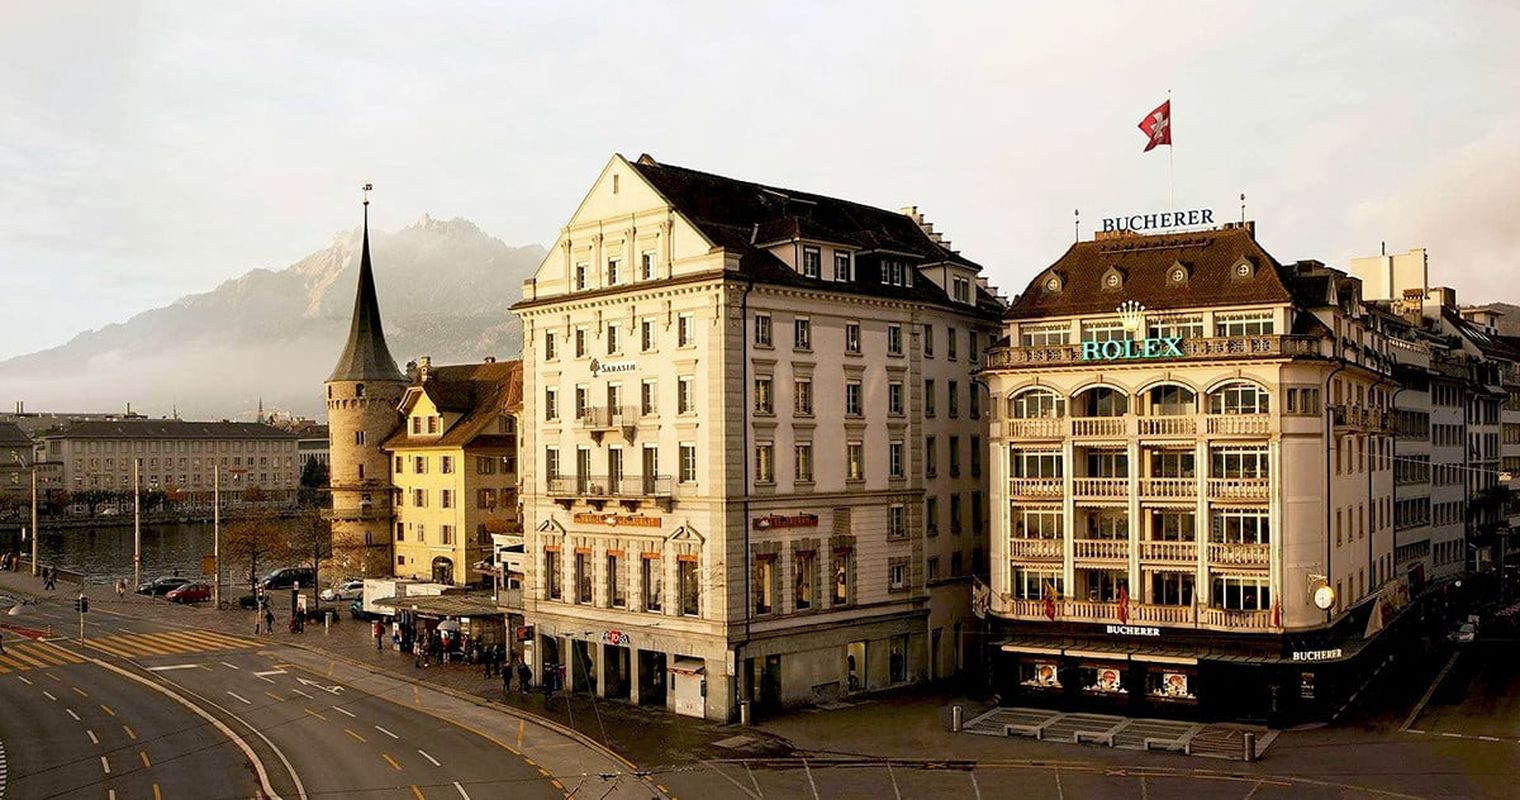 Nach Rolex-Bucherer-Deal: Was sich am Schwanenplatz ändert